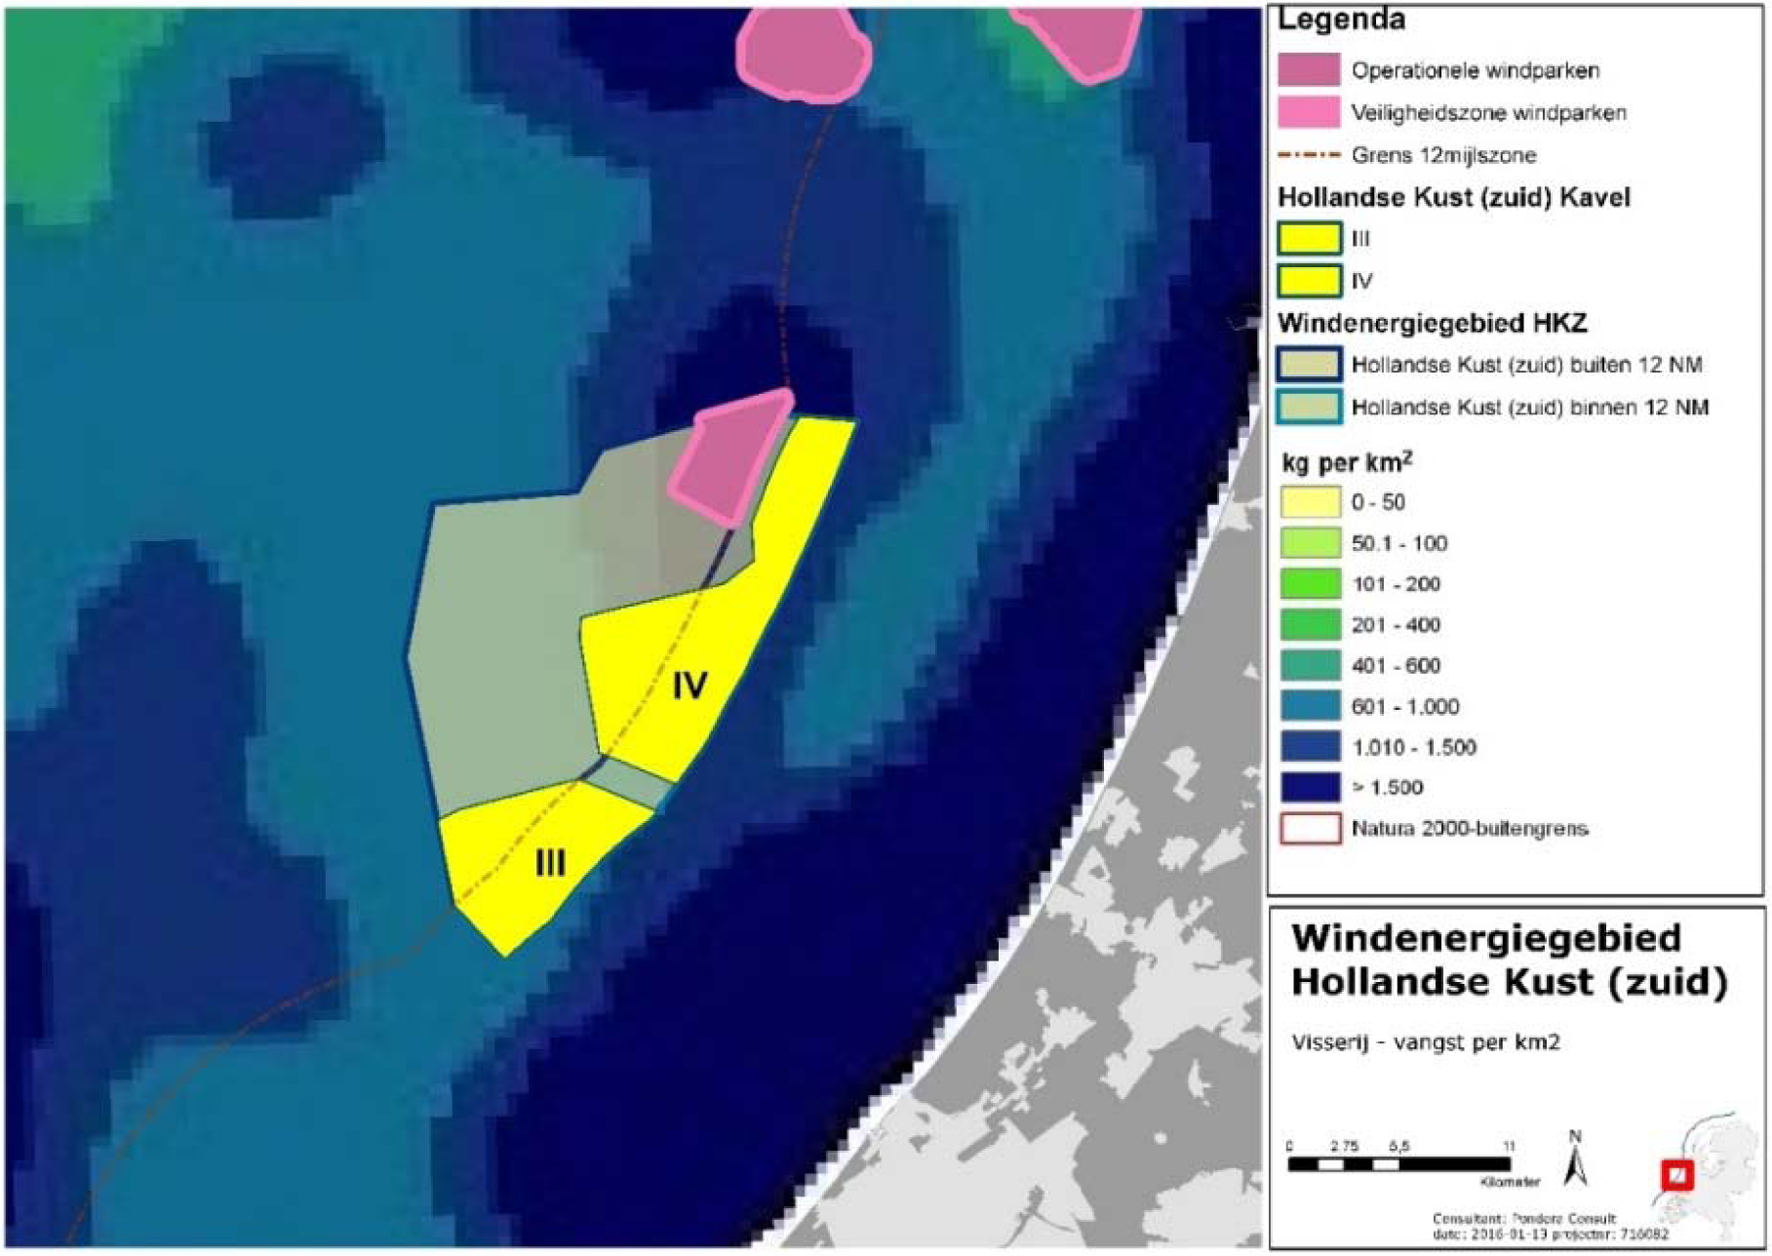 Figuur 7 Visserij vangst per km2 in de omgeving van windenergiegebied Hollandse Kust (zuid)